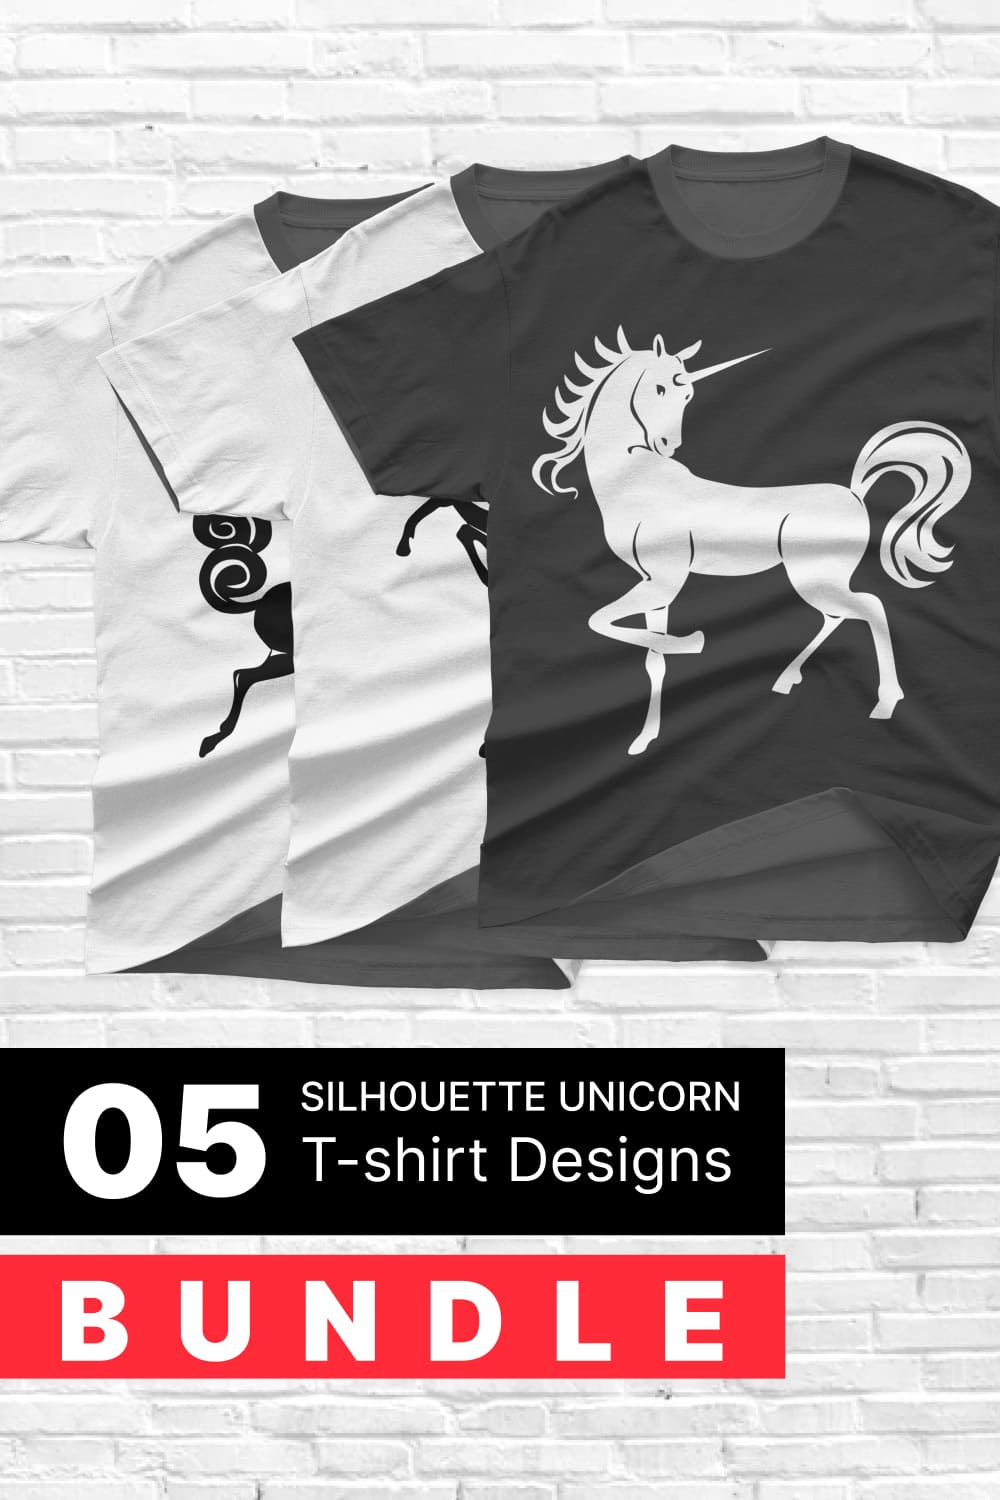 Silhouette Unicorn T-shirt Designs Bundle - Pinterest.